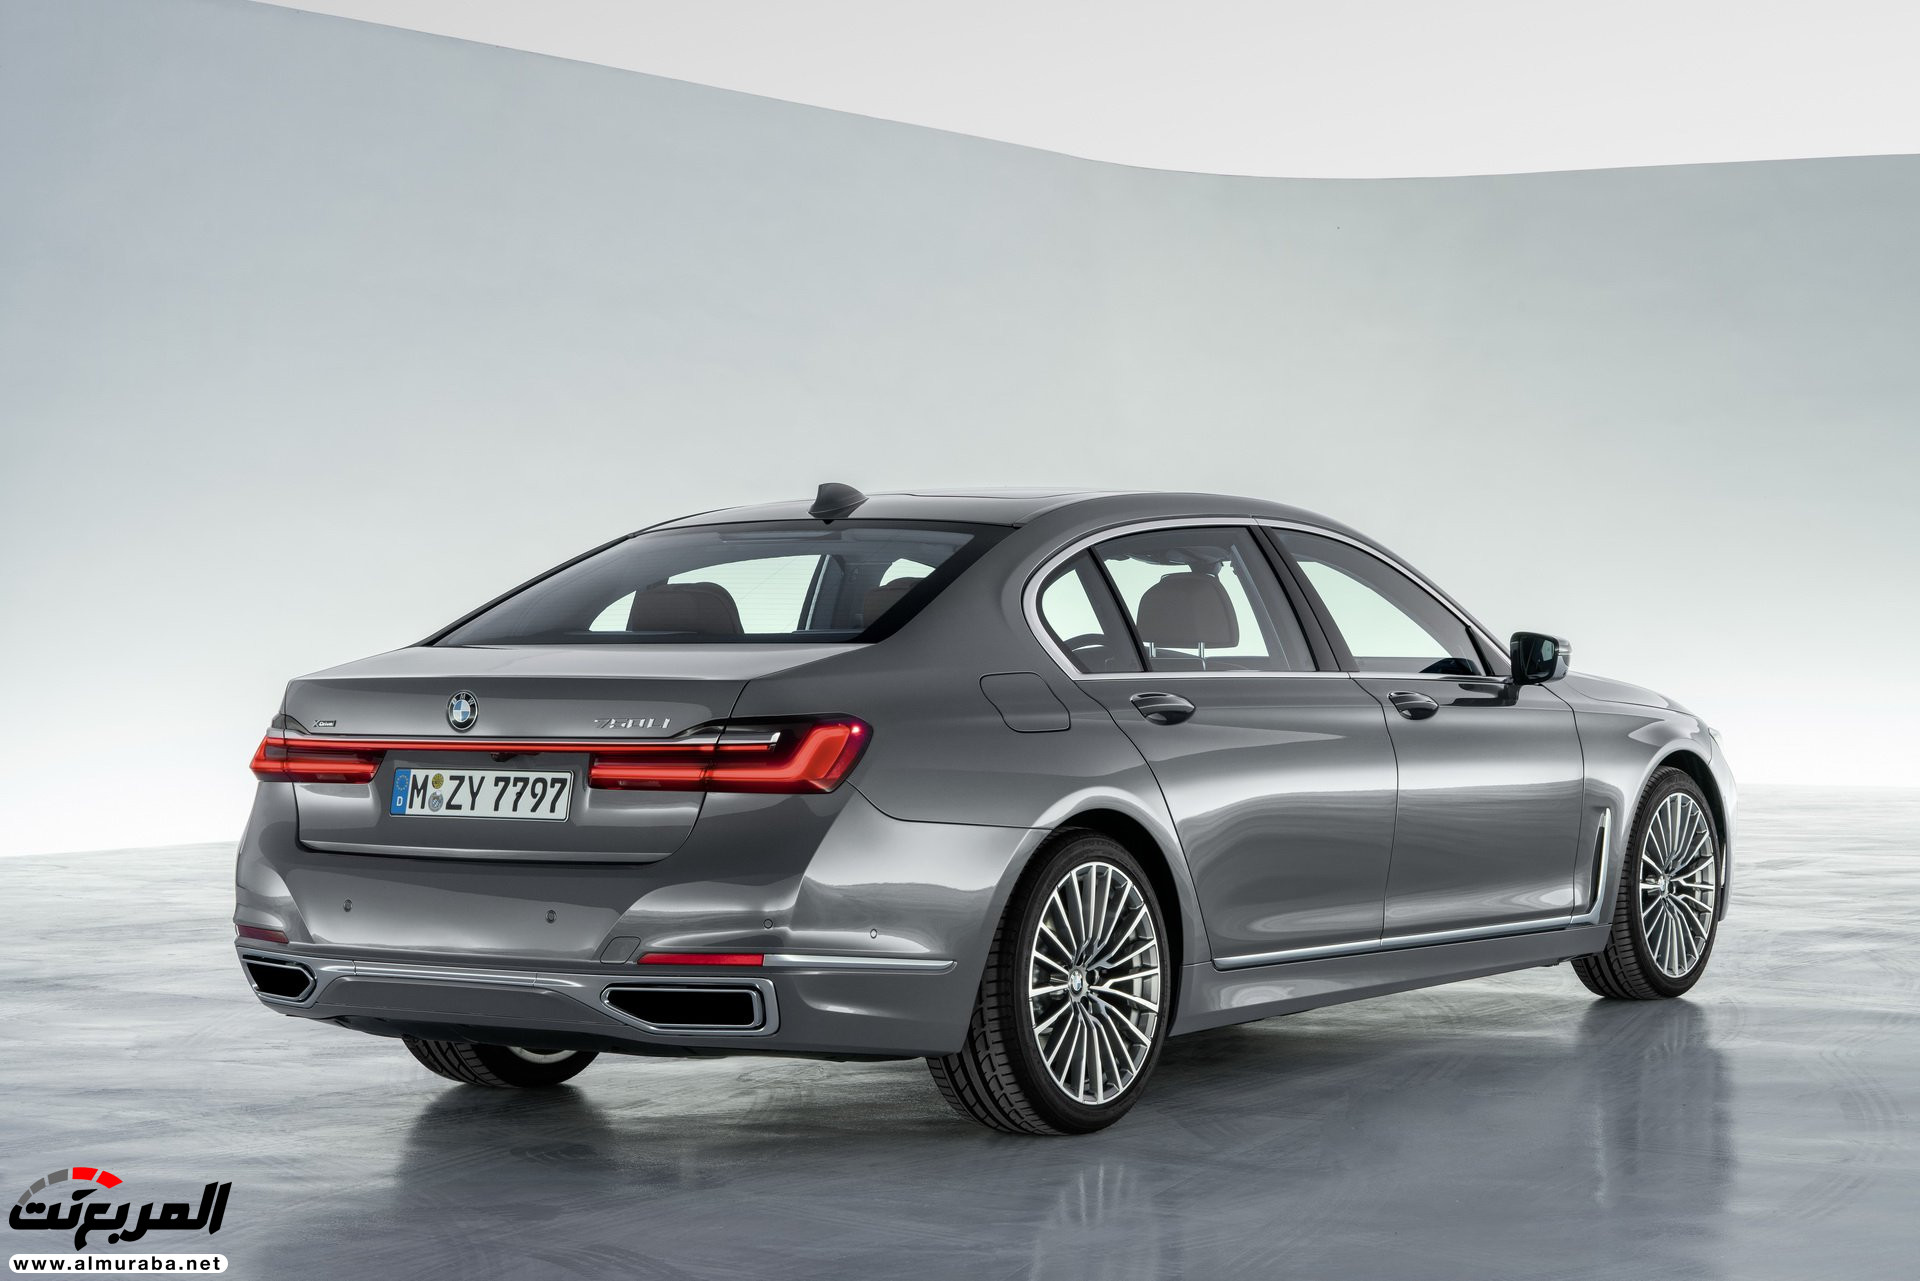 بي ام دبليو الفئة السابعة 2020 المحدثة تكشف نفسها رسمياً "صور ومواصفات" BMW 7 Series 28